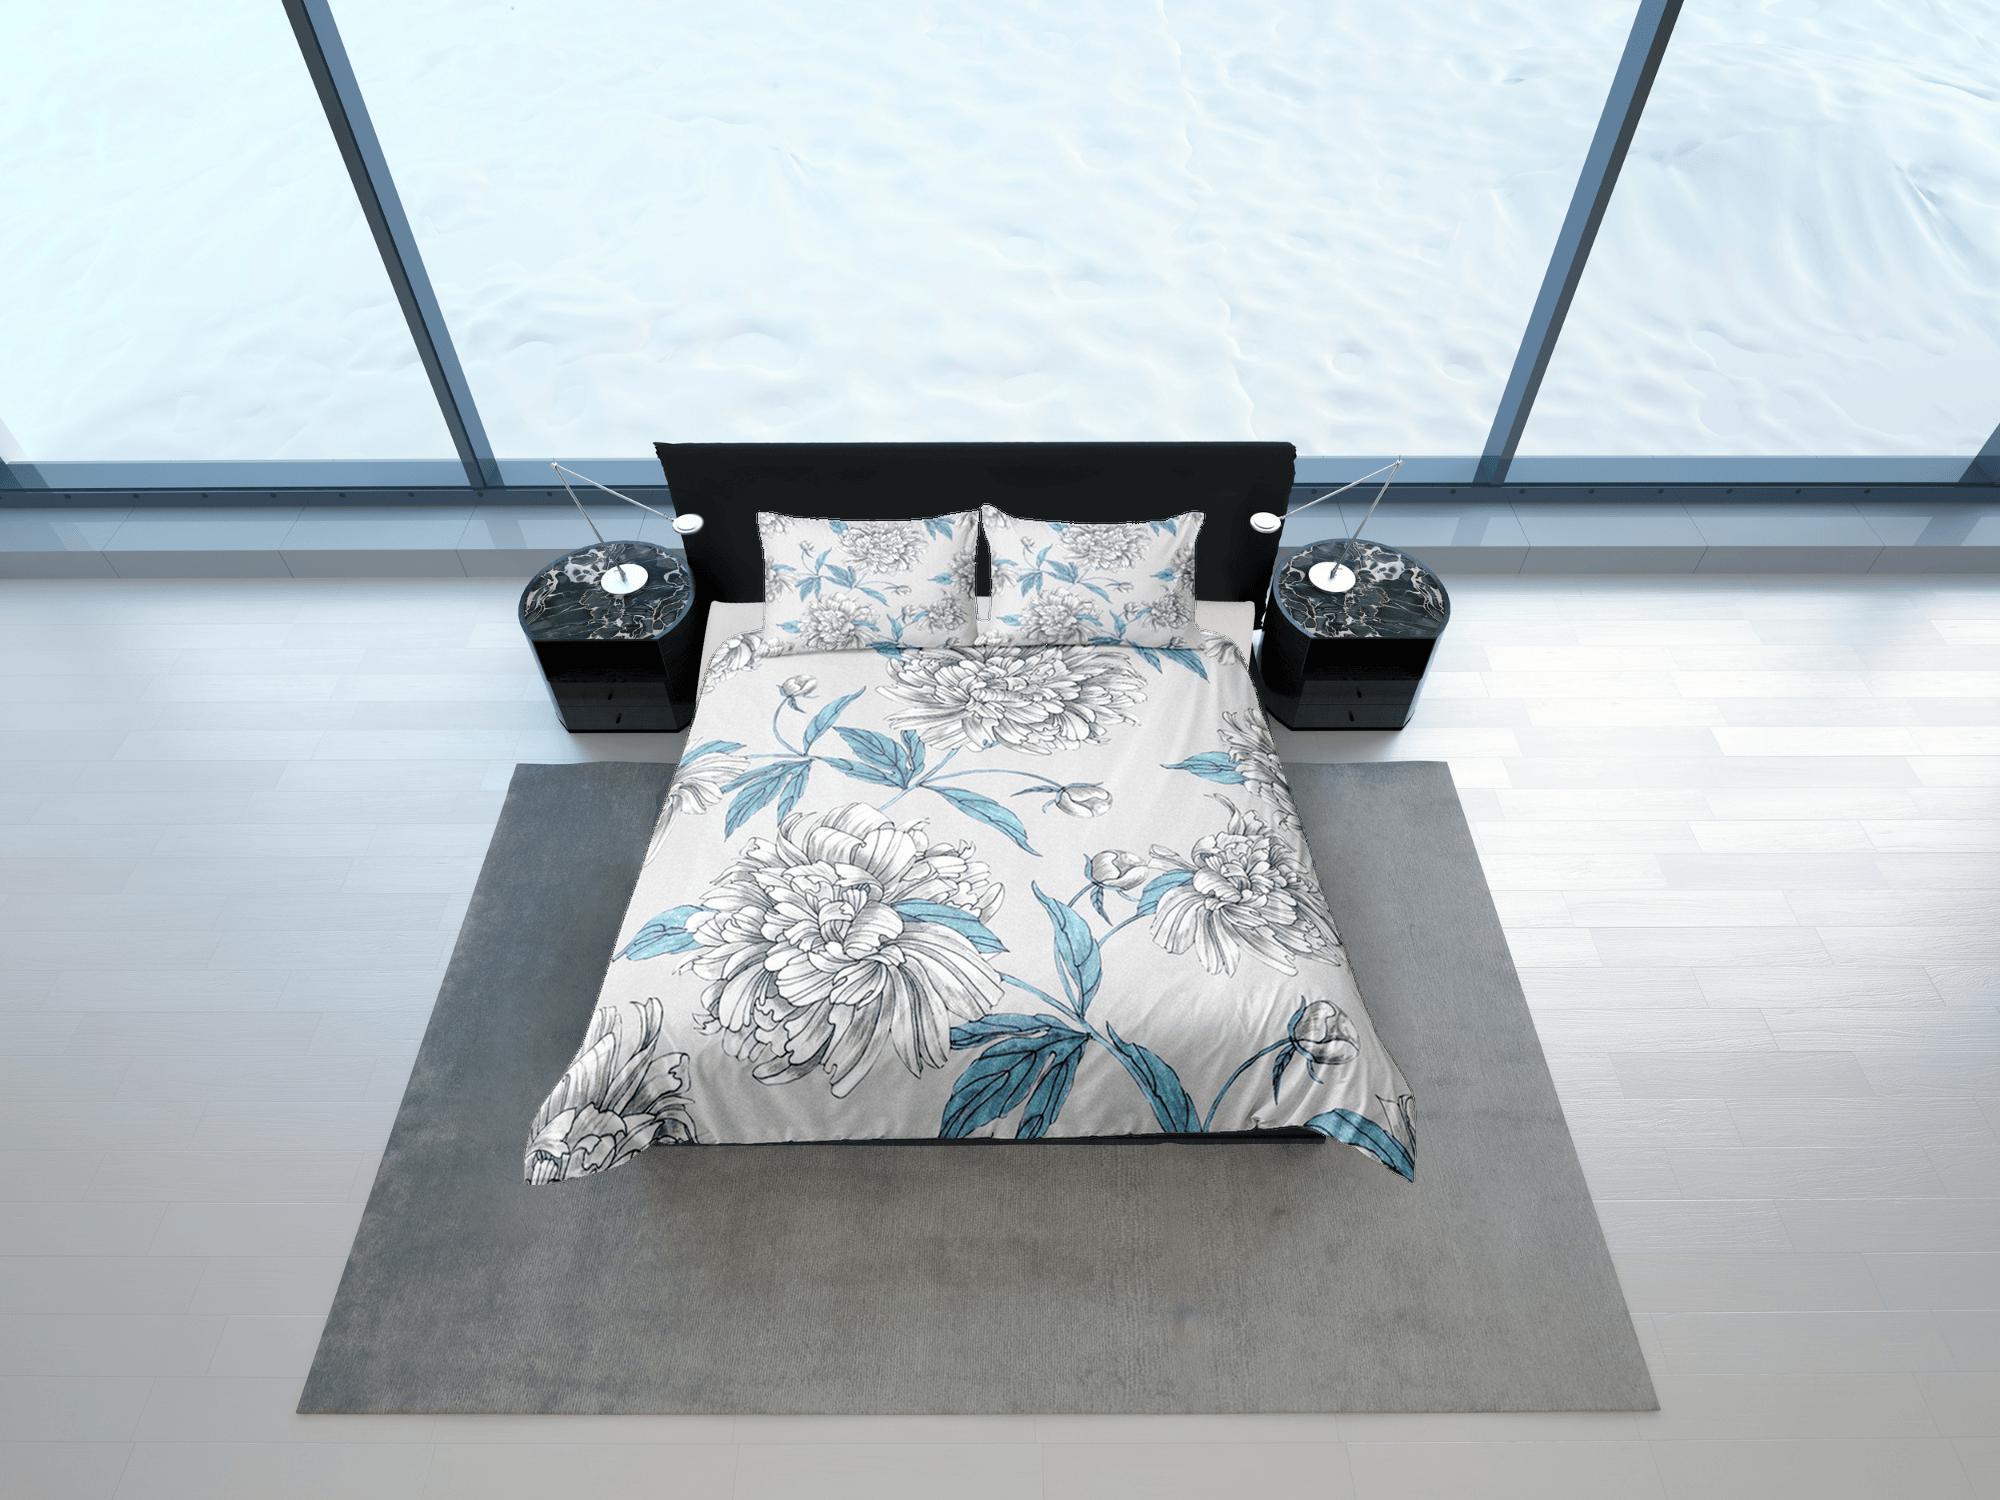 daintyduvet White Peony Grey Duvet Cover Set, Floral Bedspread Dorm Bedding Set Single Bedding